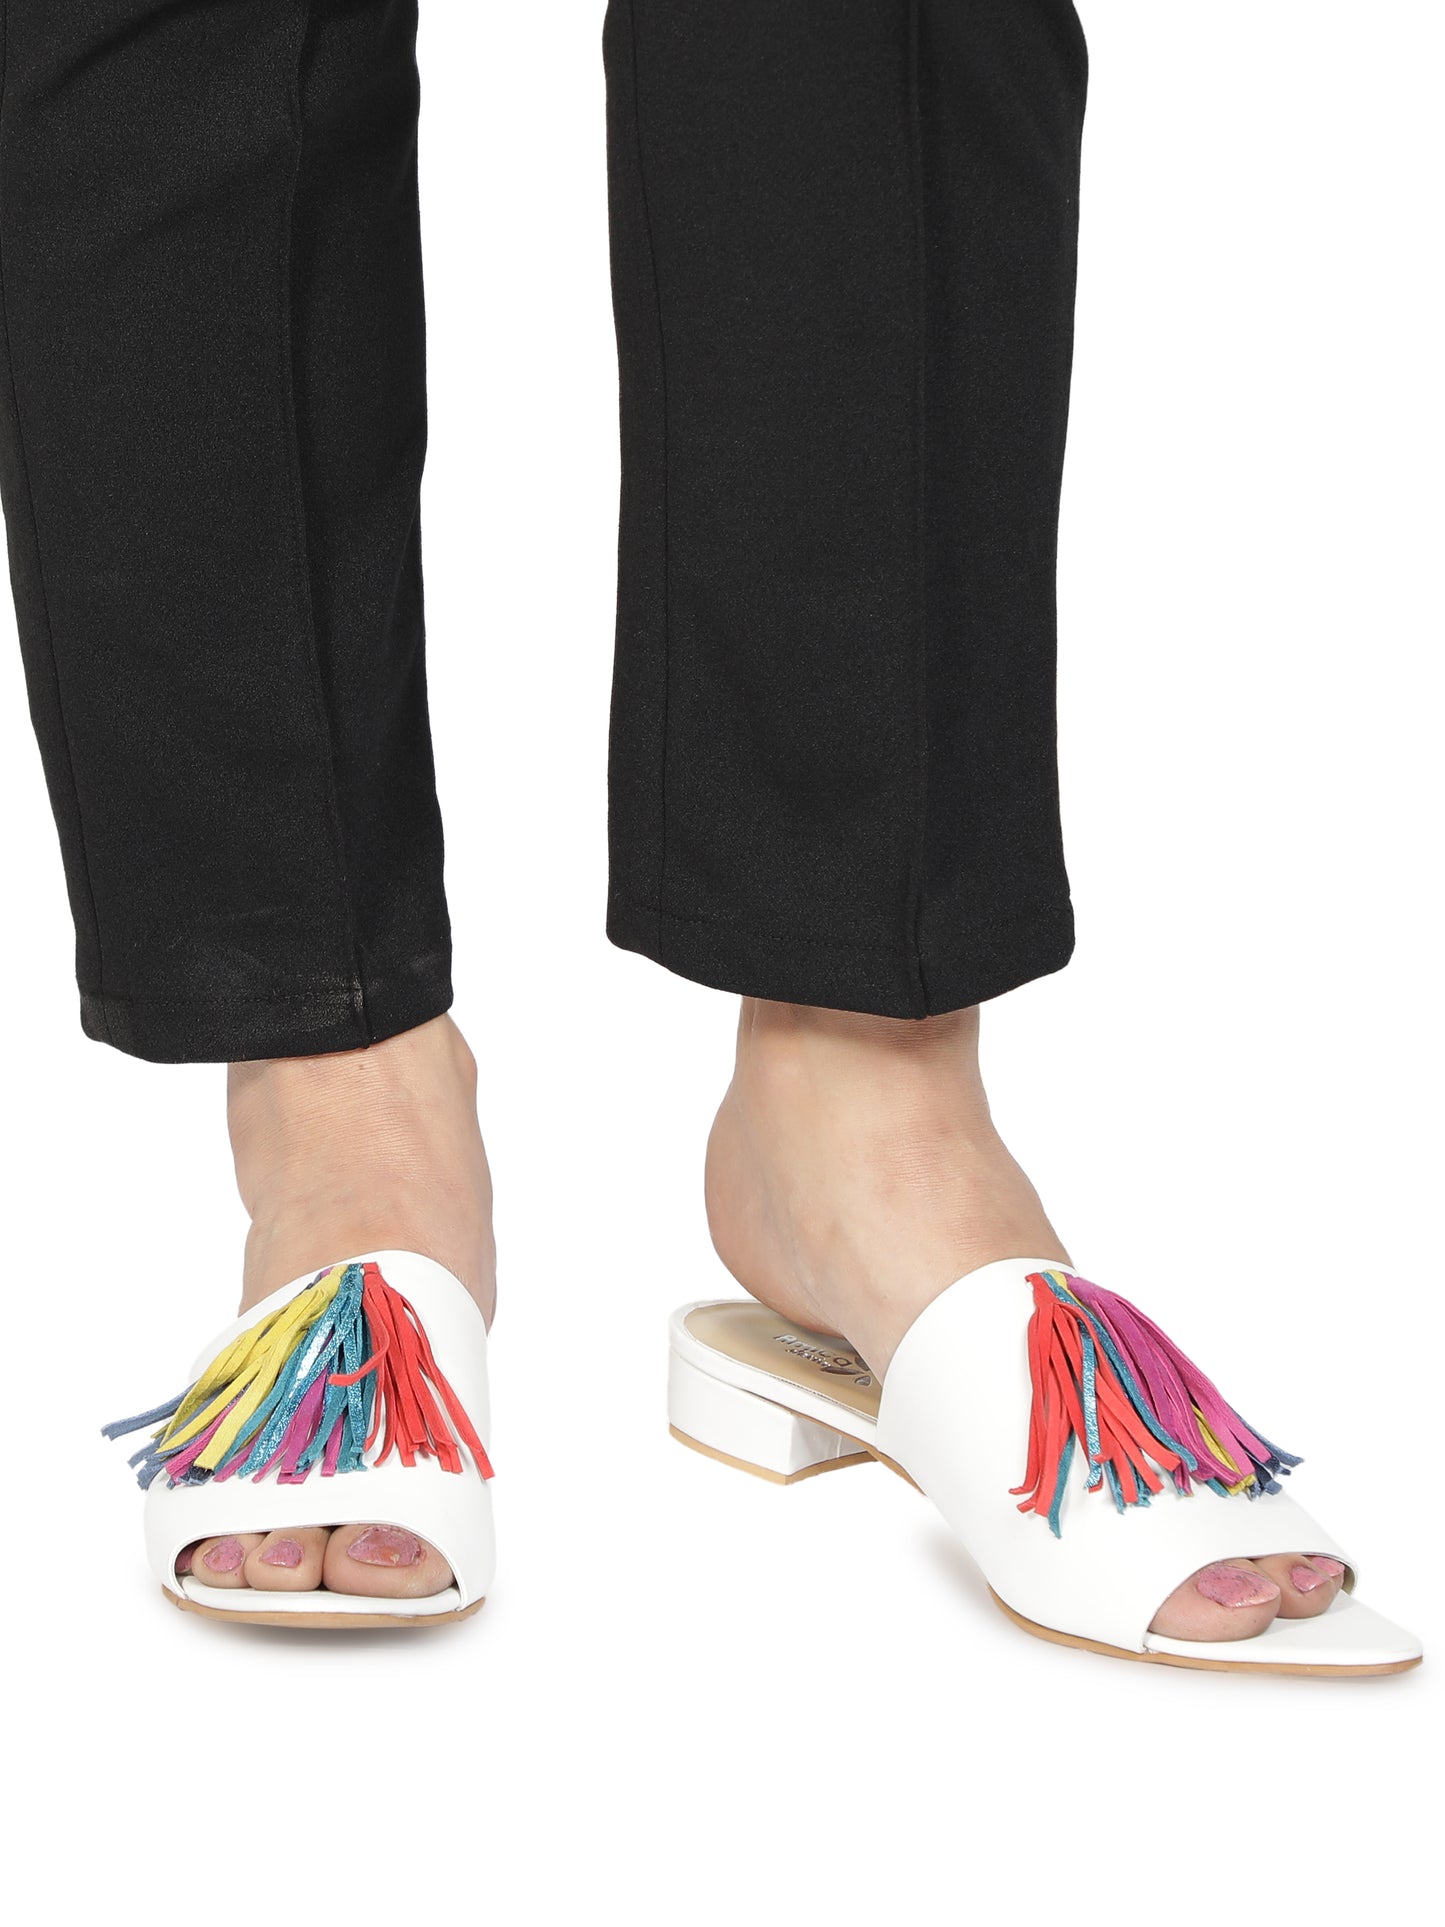 Aady Austin Women Tassel White Open Toe Block Heels (AUSF19080)